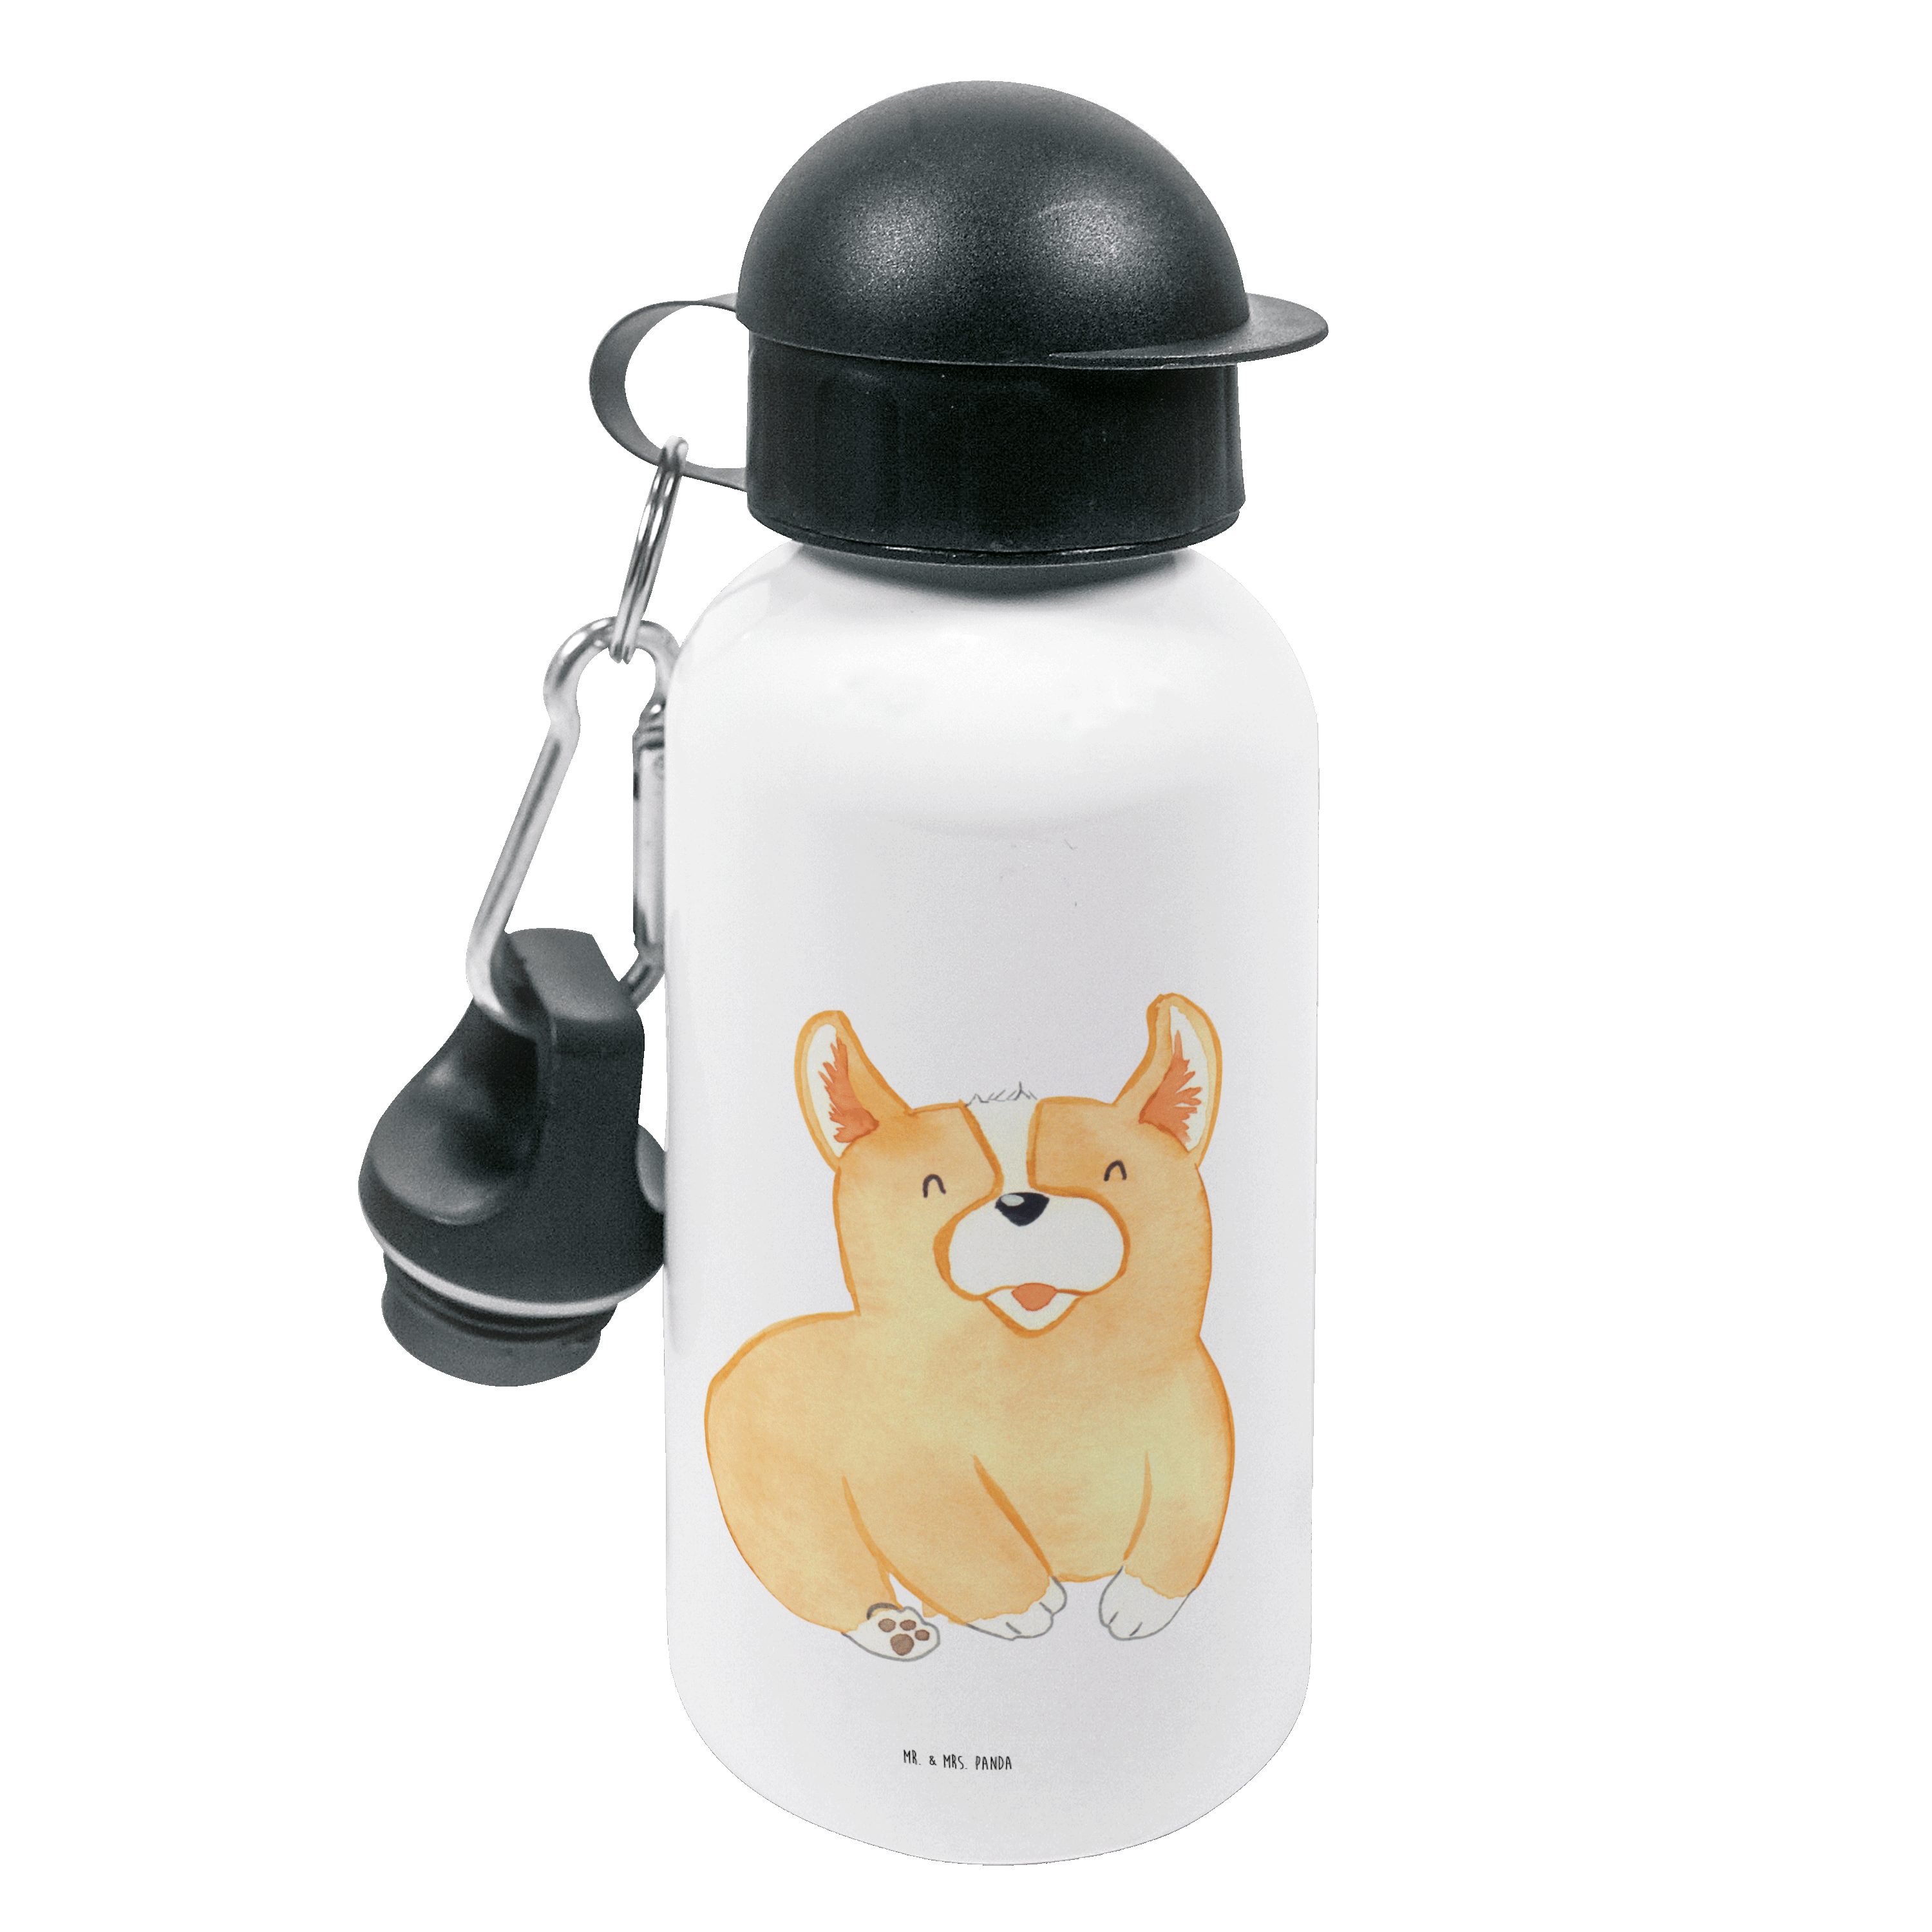 Mr. & Mrs. Panda Trinkflasche Corgie - Weiß - Geschenk, Spruch, Kids, Hund, Wauwau, Kinderflasche, Leicht zu öffnen